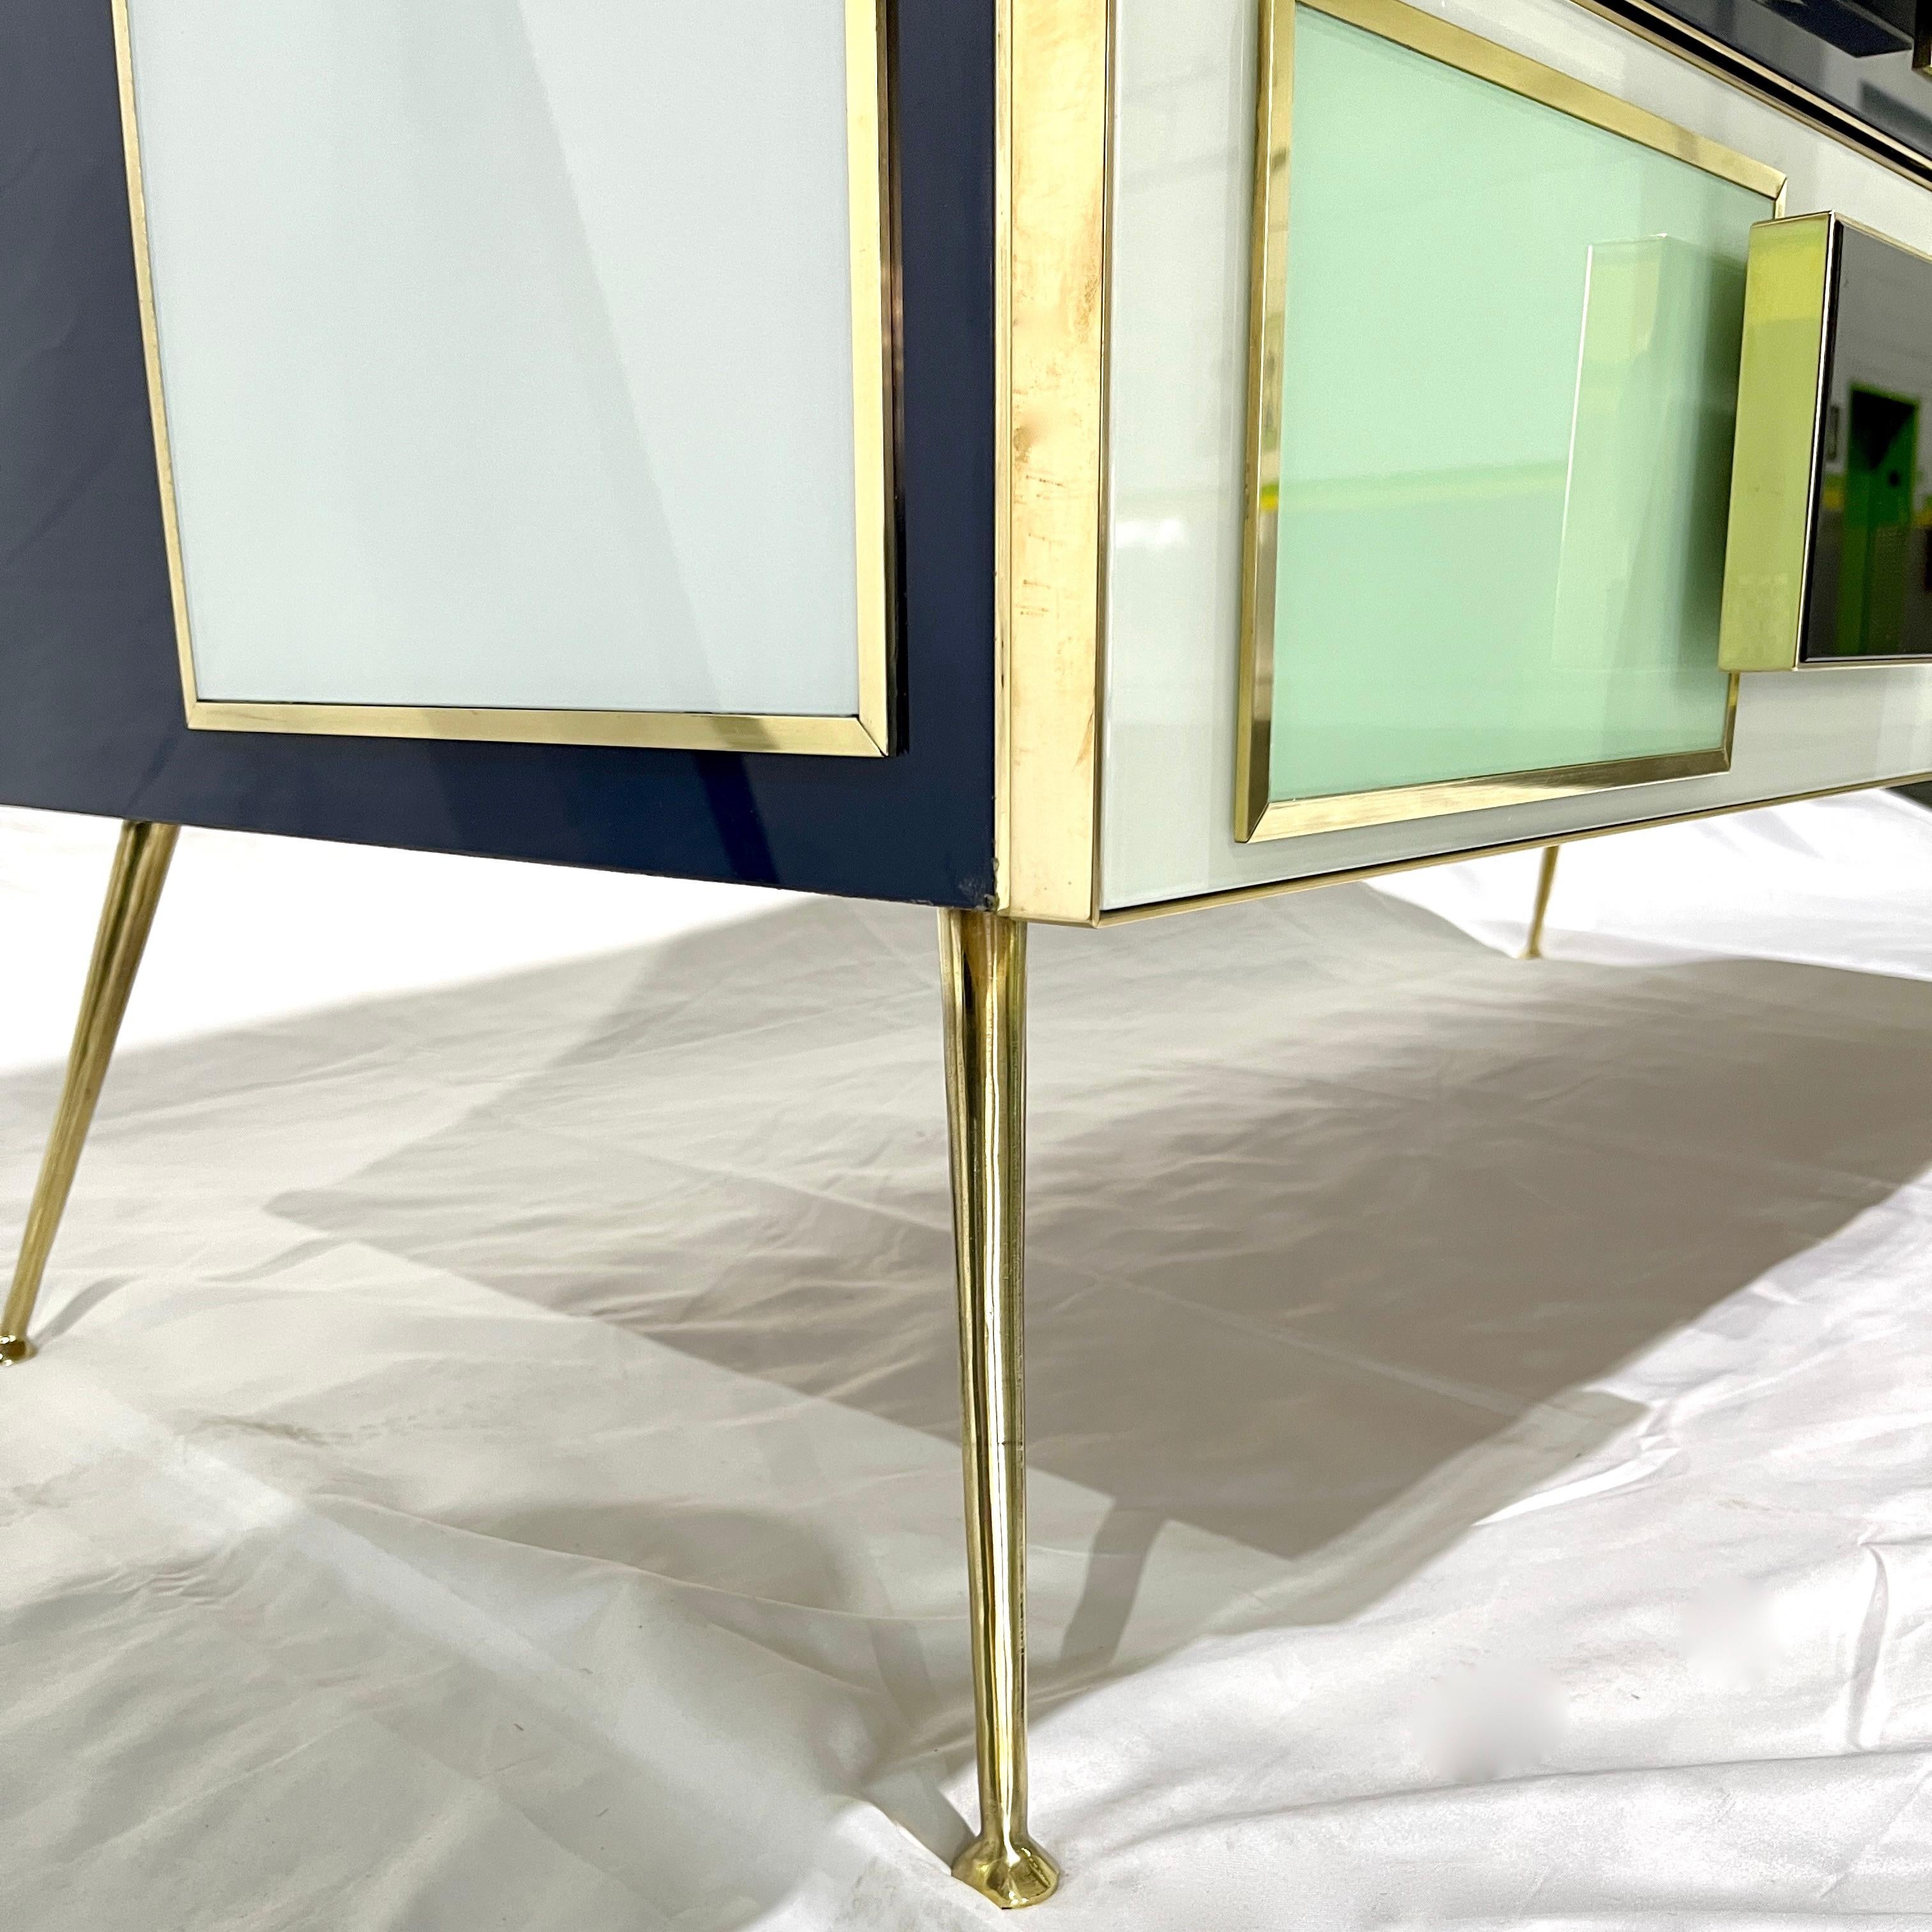 Art Glass Bespoke Italian Mondrian Style Blue Green White Brown Modern Brass Dresser/Chest For Sale